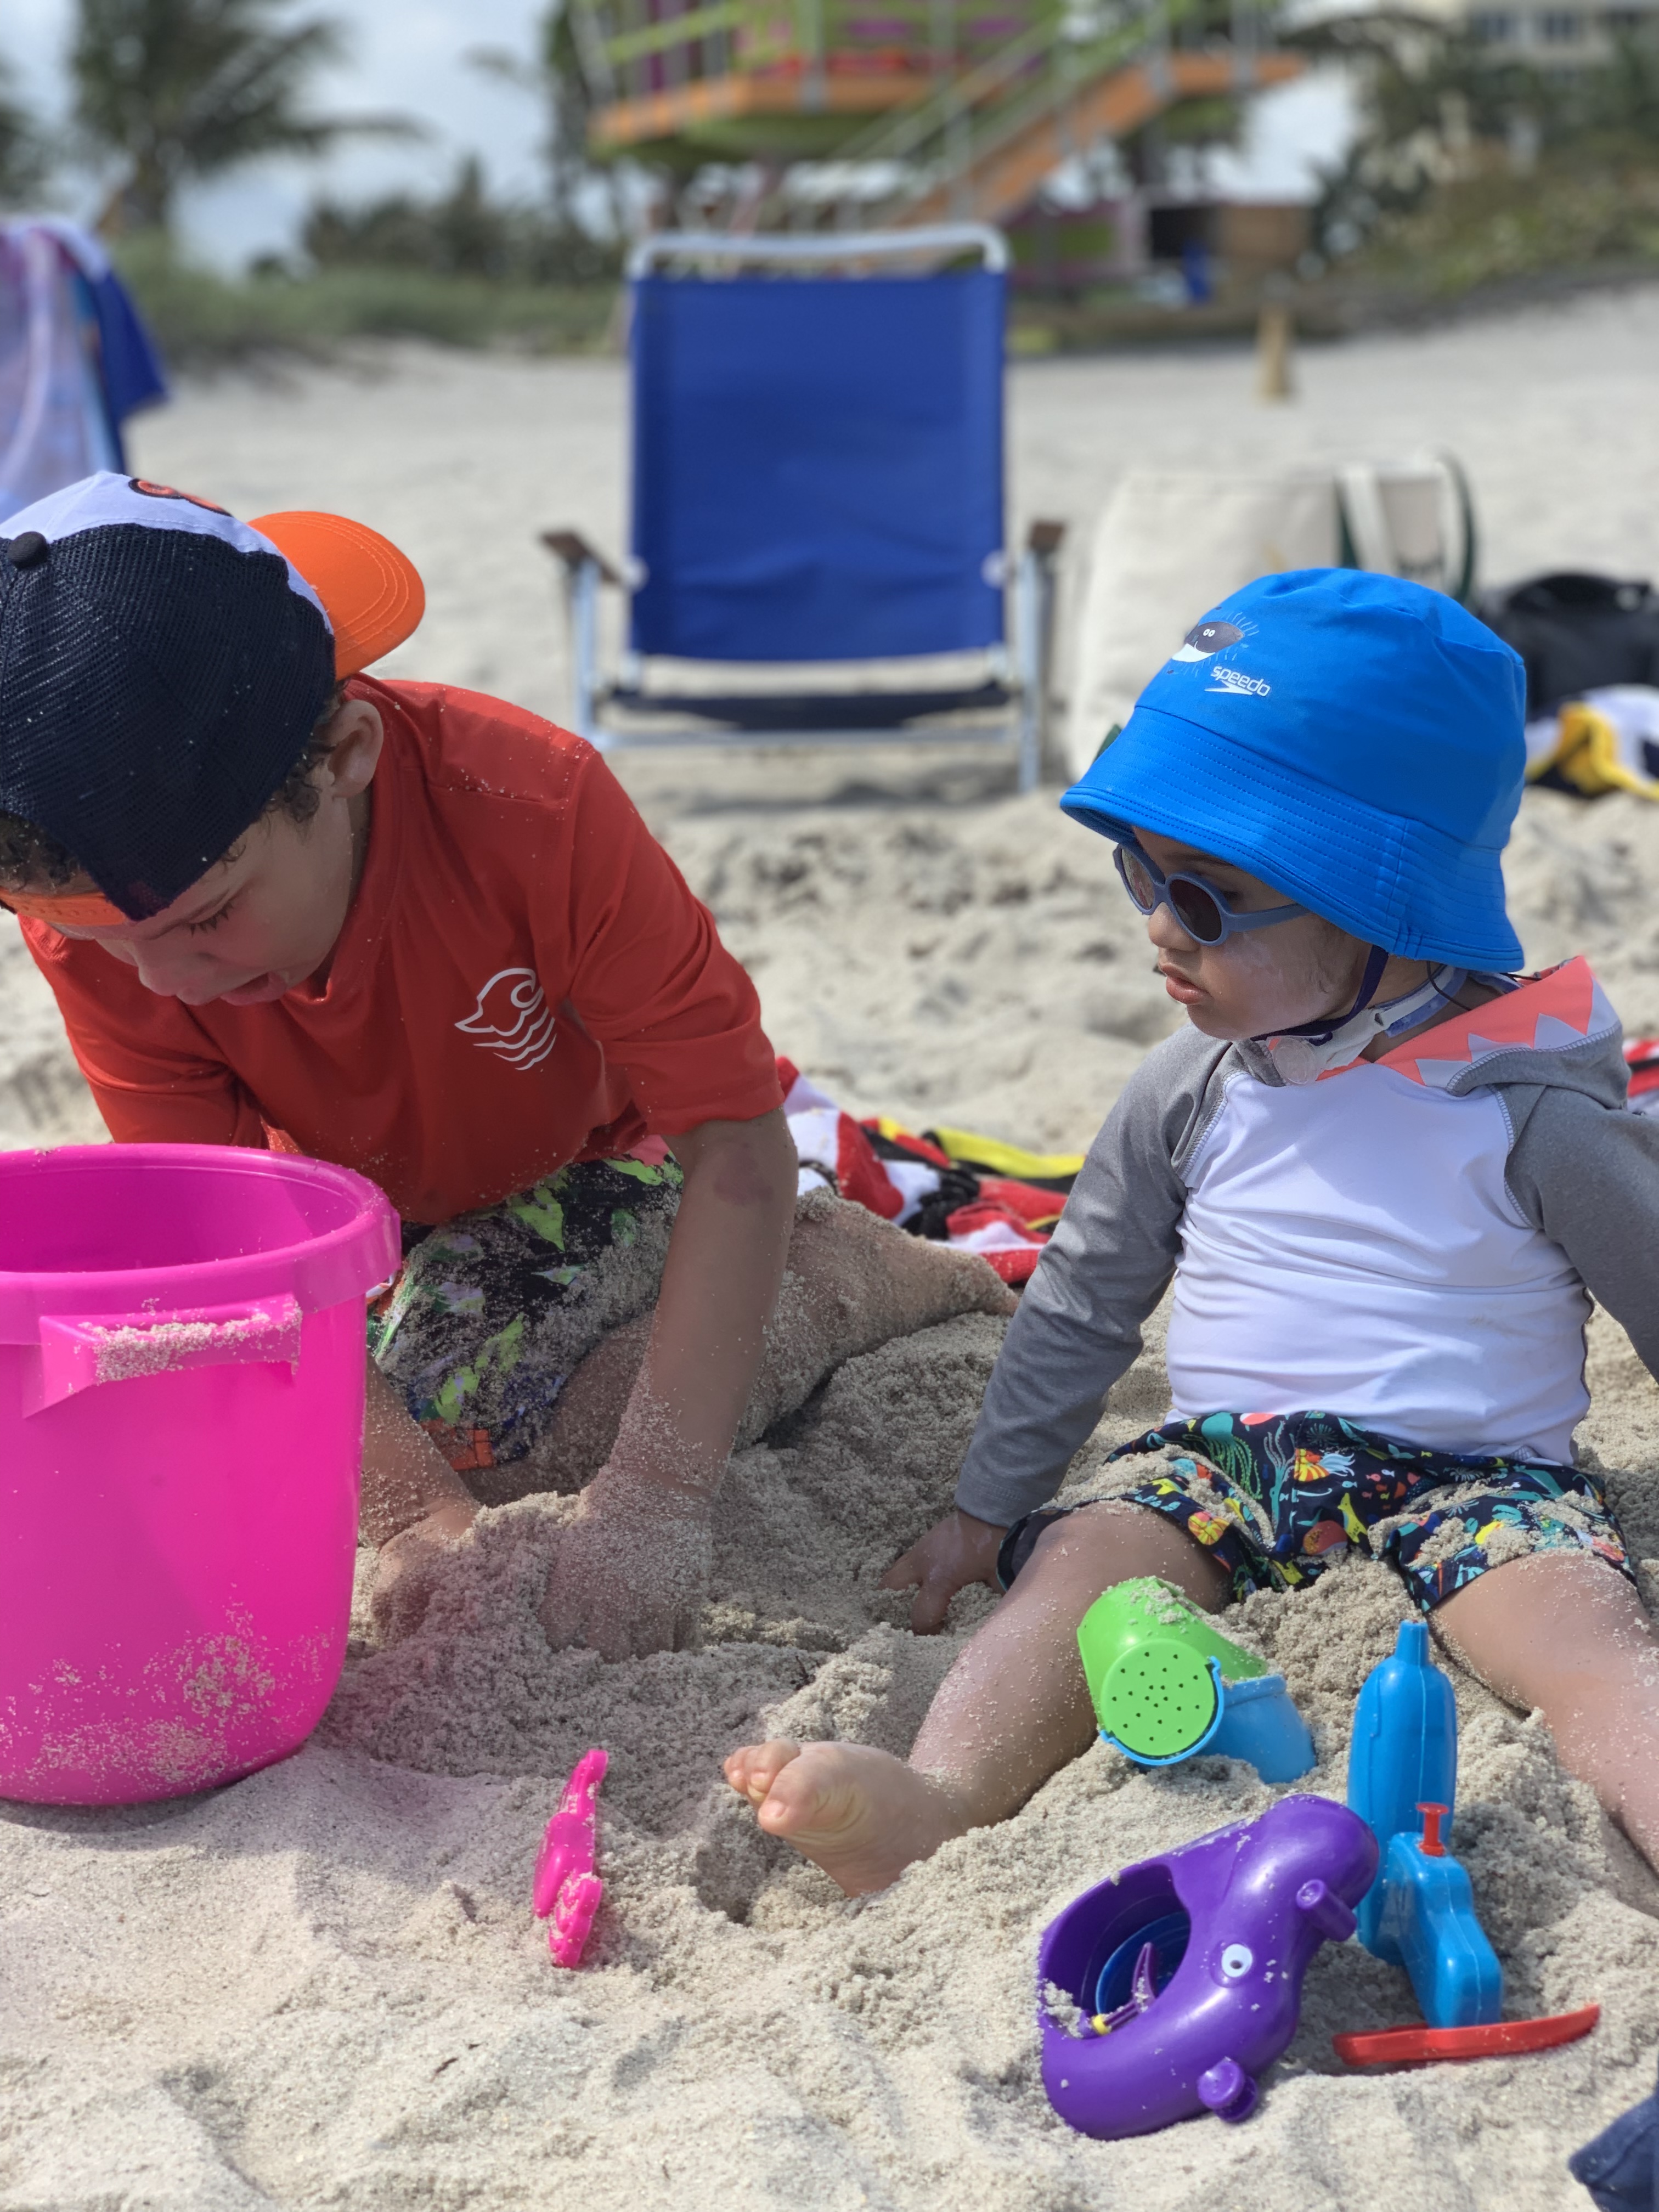 Jaxson y su hermano juegan con juguetes en la arena de la playa.